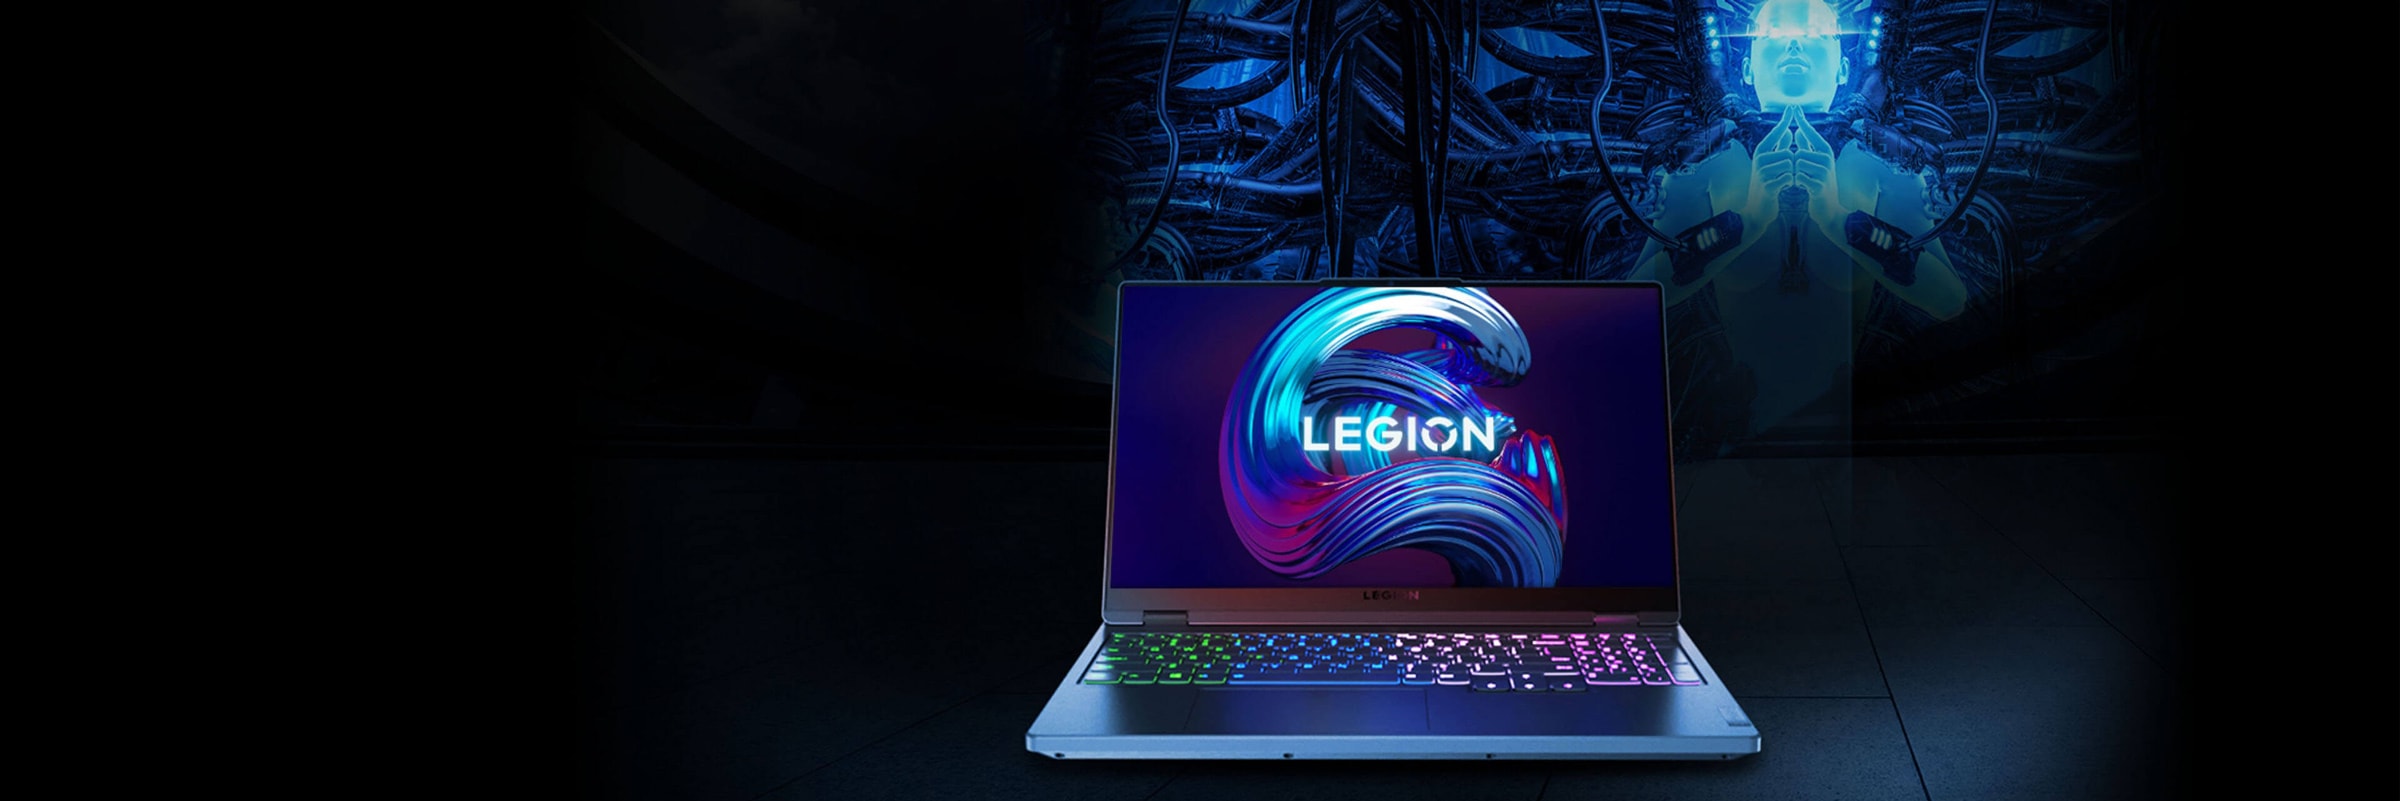 Вигляд спереду ноутбука Legion, відкритого на 90 градусів; показано екран і клавіатуру.